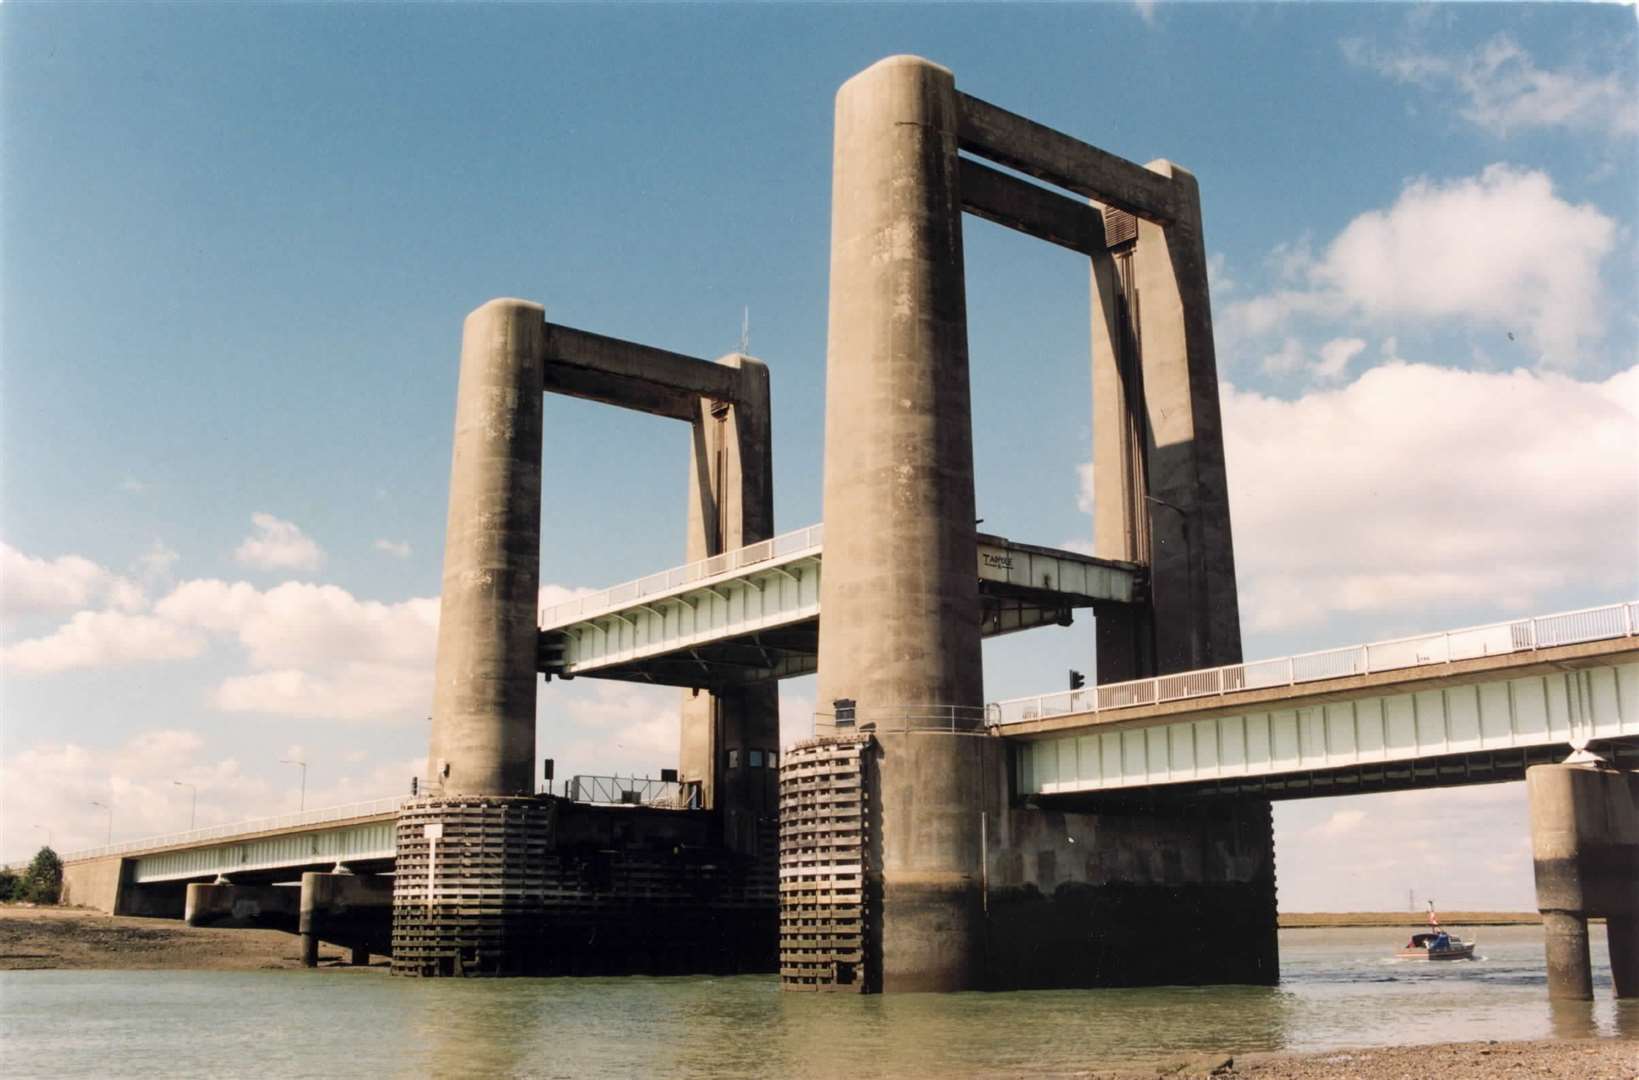 Kingsferry Bridge in 1995